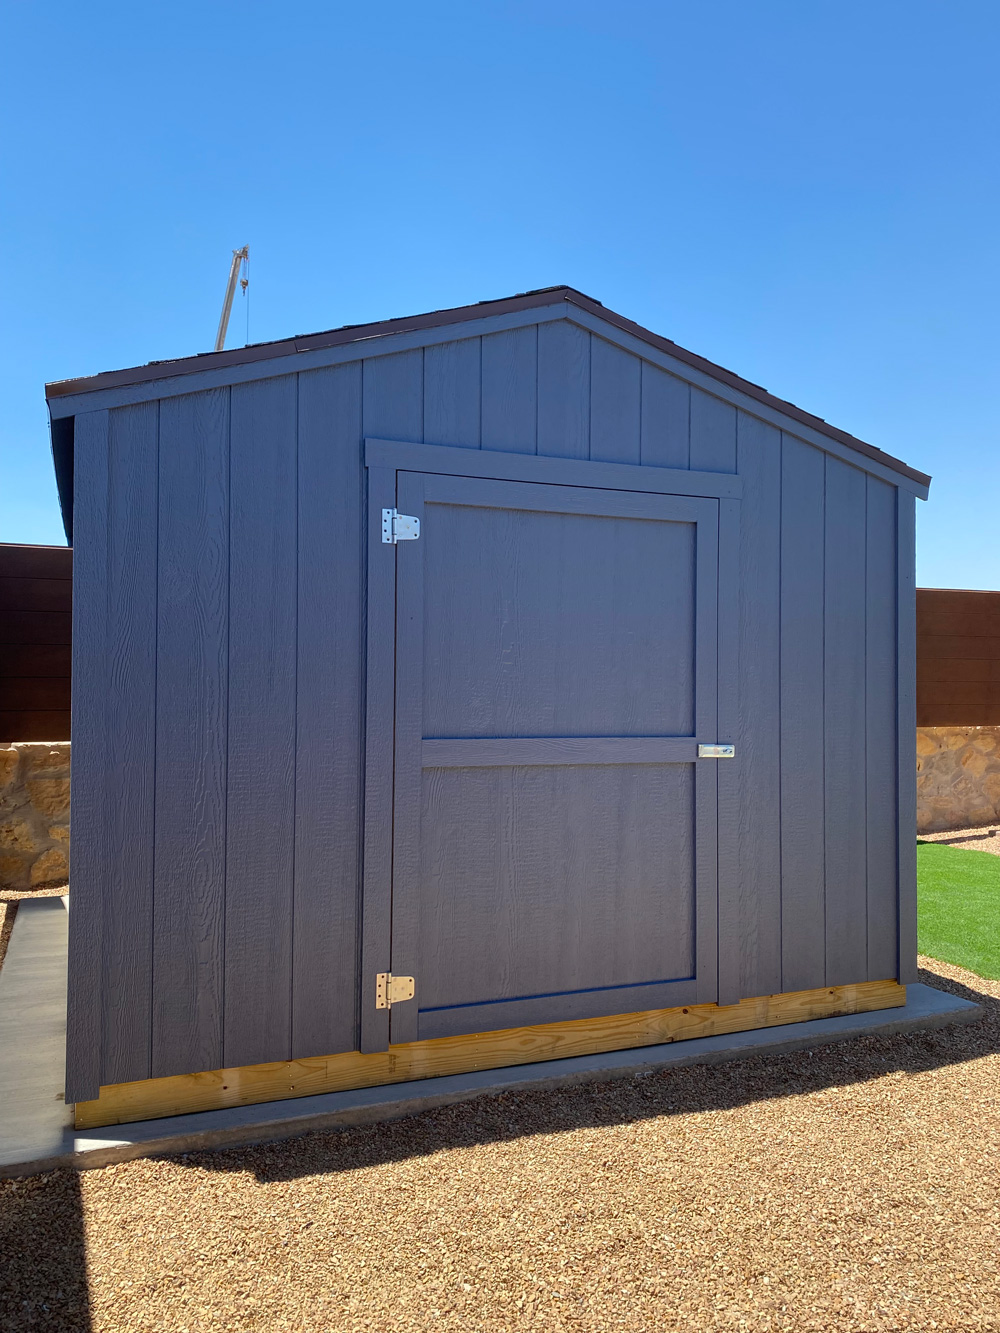 A grey outdoor storage shed in a backyard in El Paso.